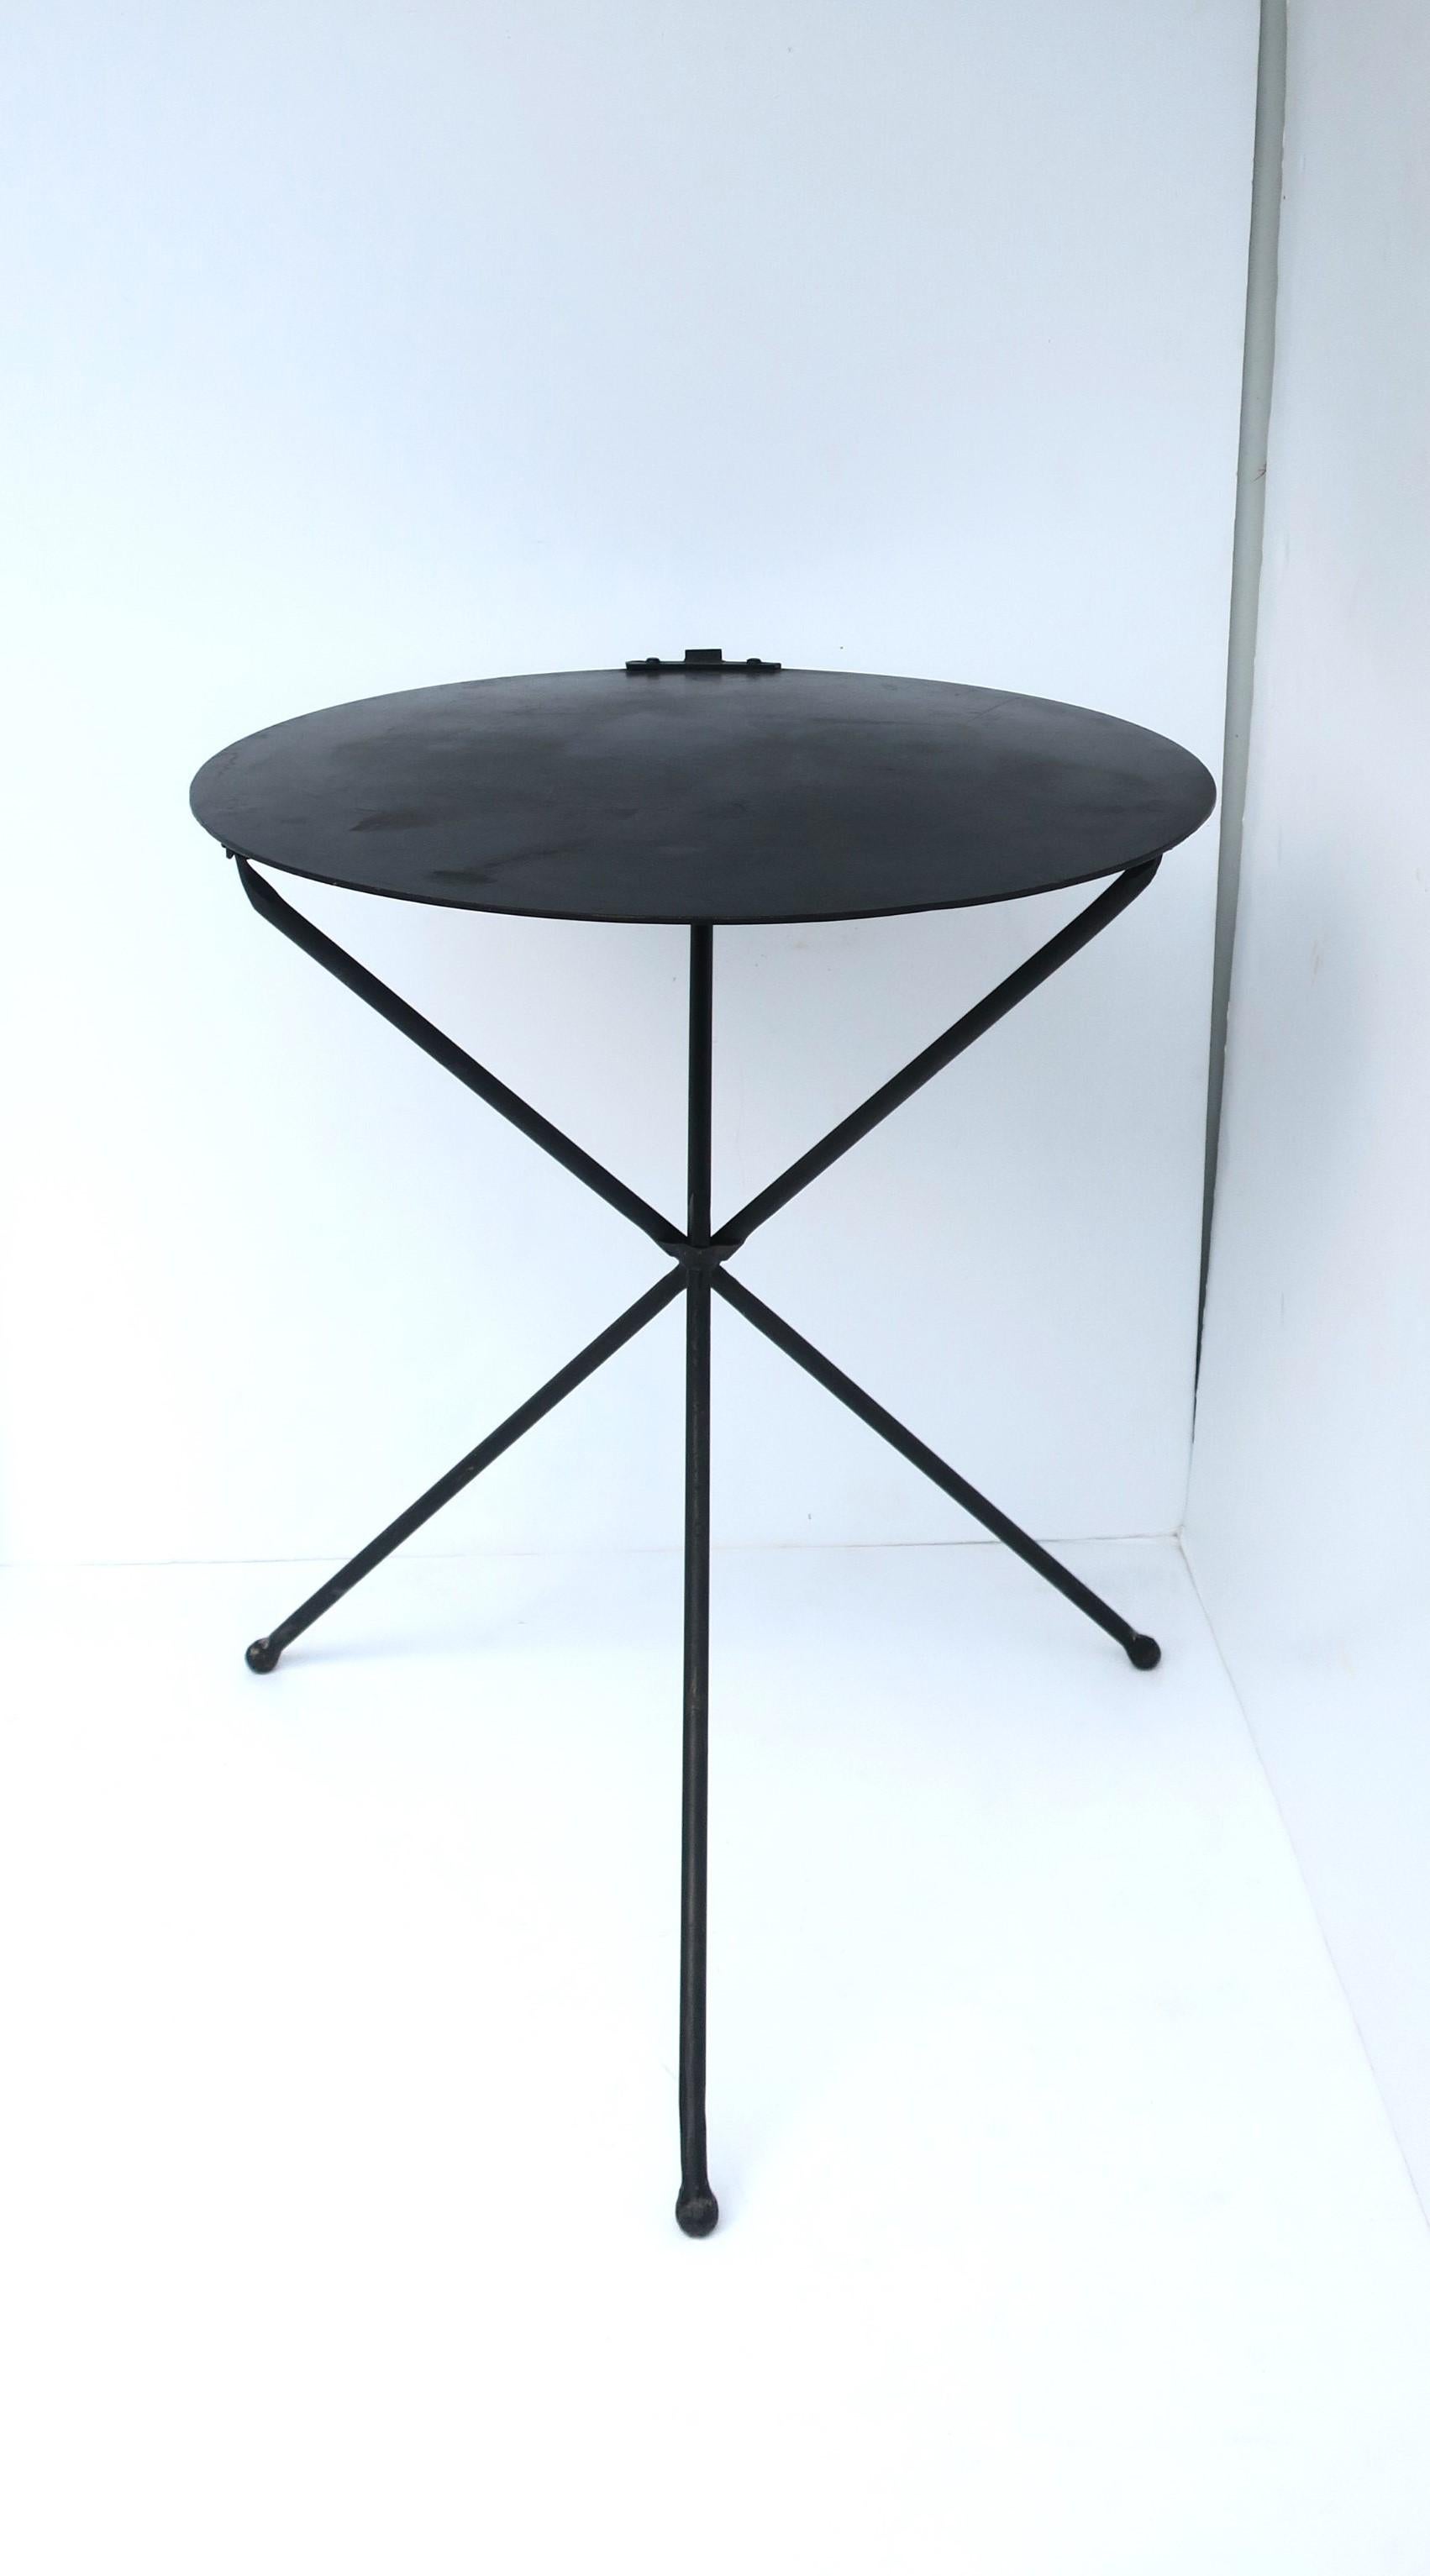 Table d'appoint ou de chevet en métal noir avec plateau circulaire et base tripode, vers la fin du XXe siècle. La table est en métal noirci, solide, a un plateau circulaire sans bord avec des détails de bultes et de boucles/anneaux sur un côté/un